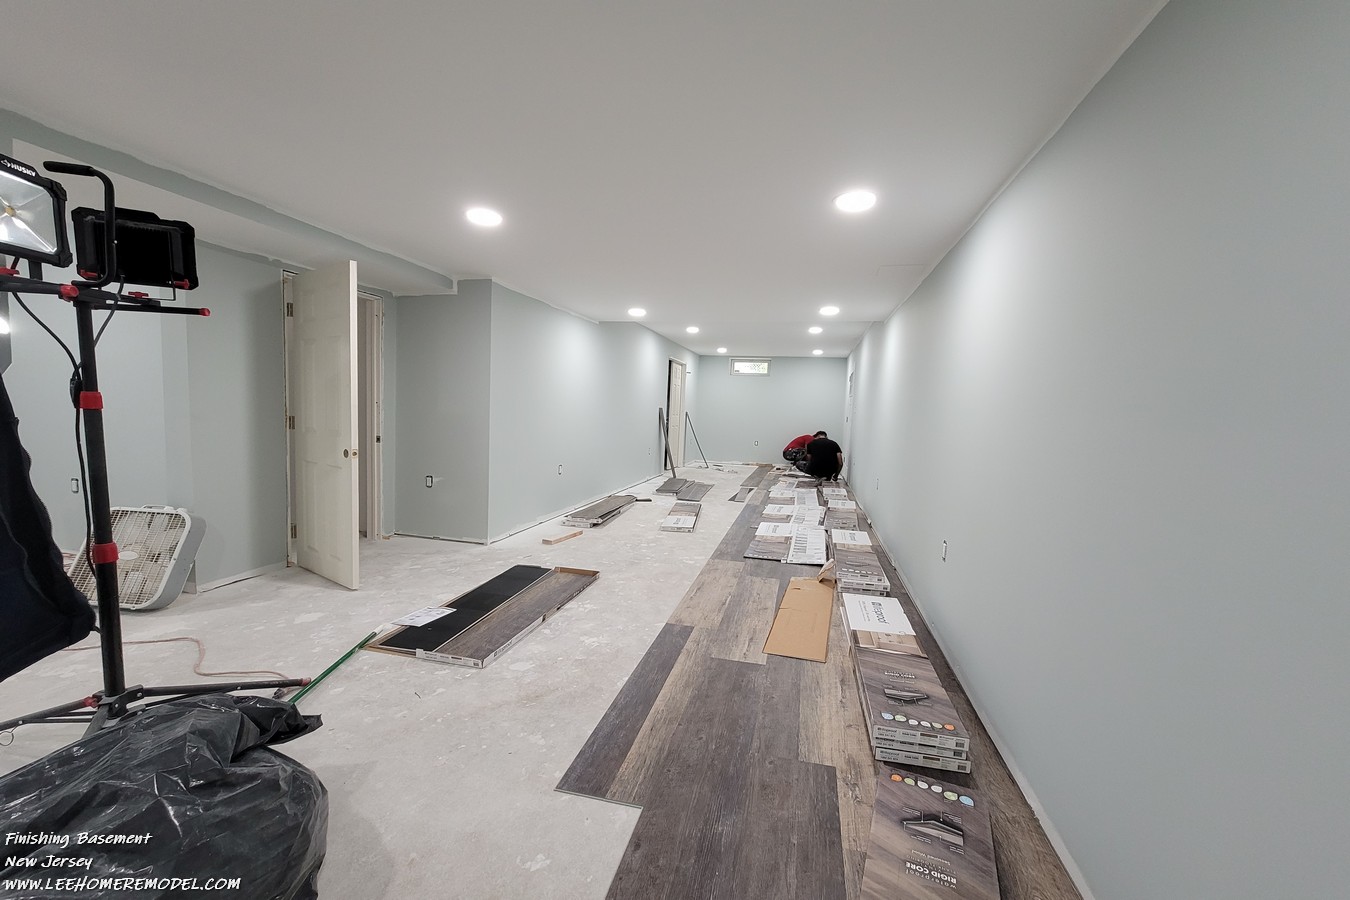 36-insulation- basement-finishing-basement-hamilton-new-jersey-1350x900.jpeg